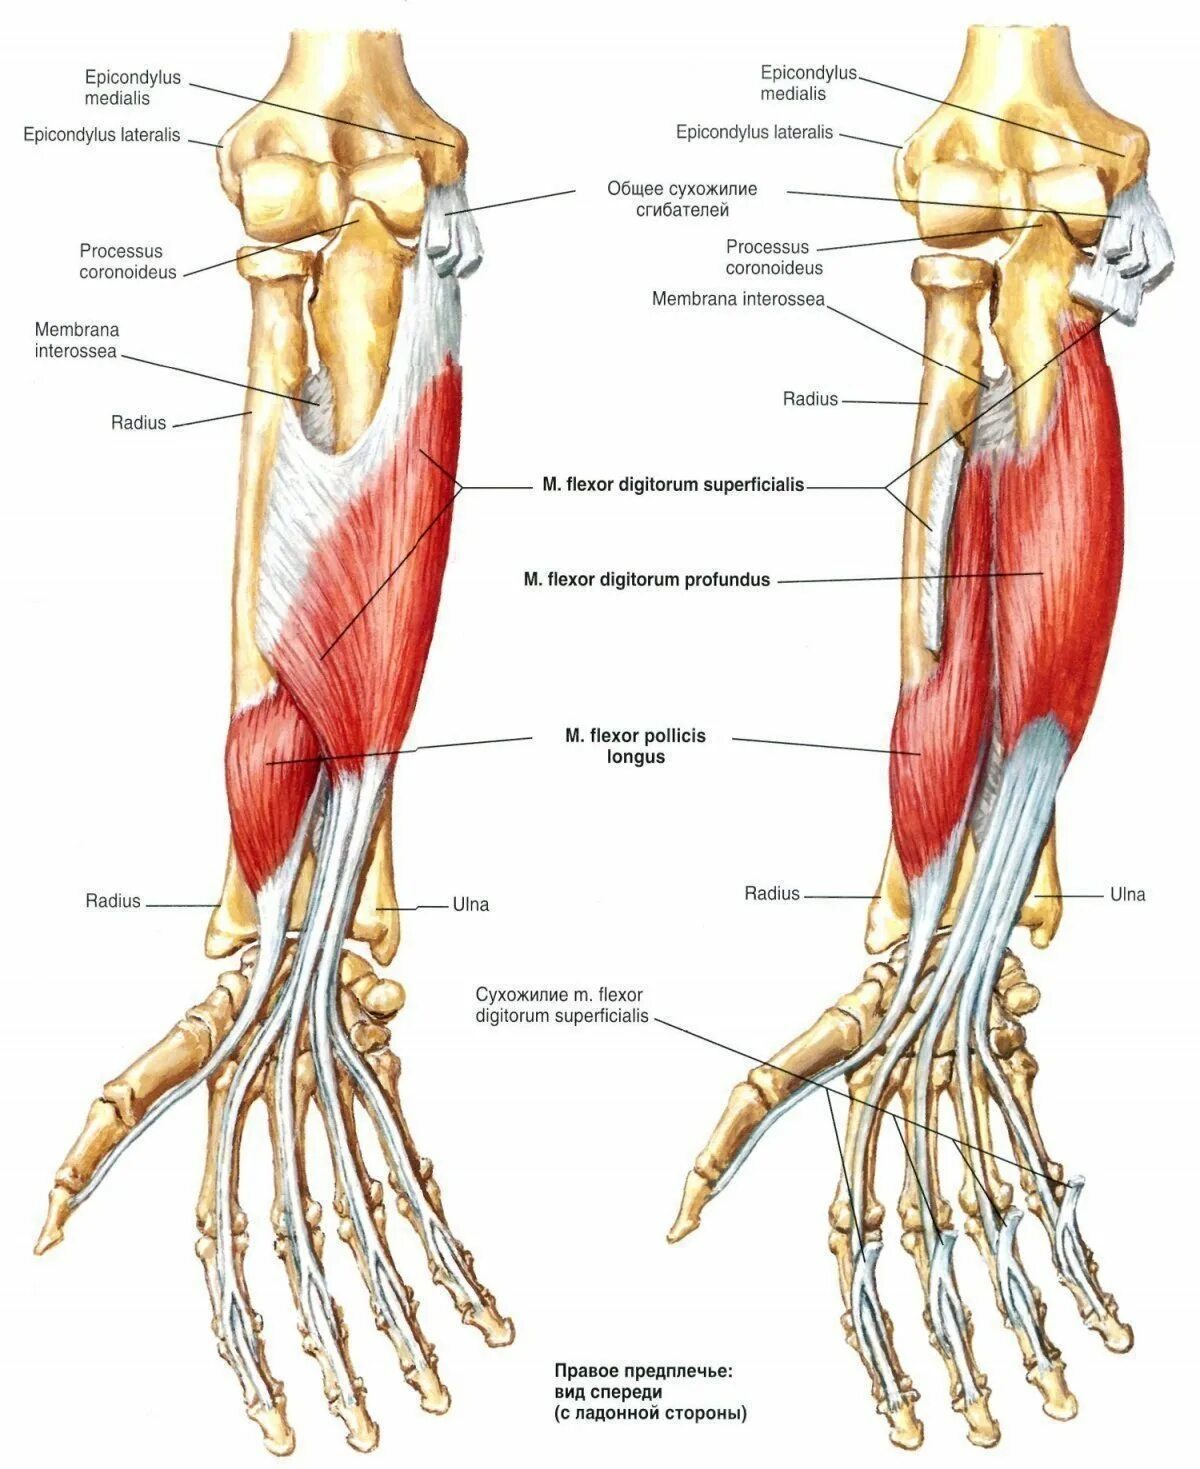 Стороны предплечья. Флексор Карпи Радиалис мышца. Поверхностные мышцы предплечья сгибатели. Мышцы сгибатели пальцев кисти. Поверхностный и глубокий сгибатель пальцев кисти.